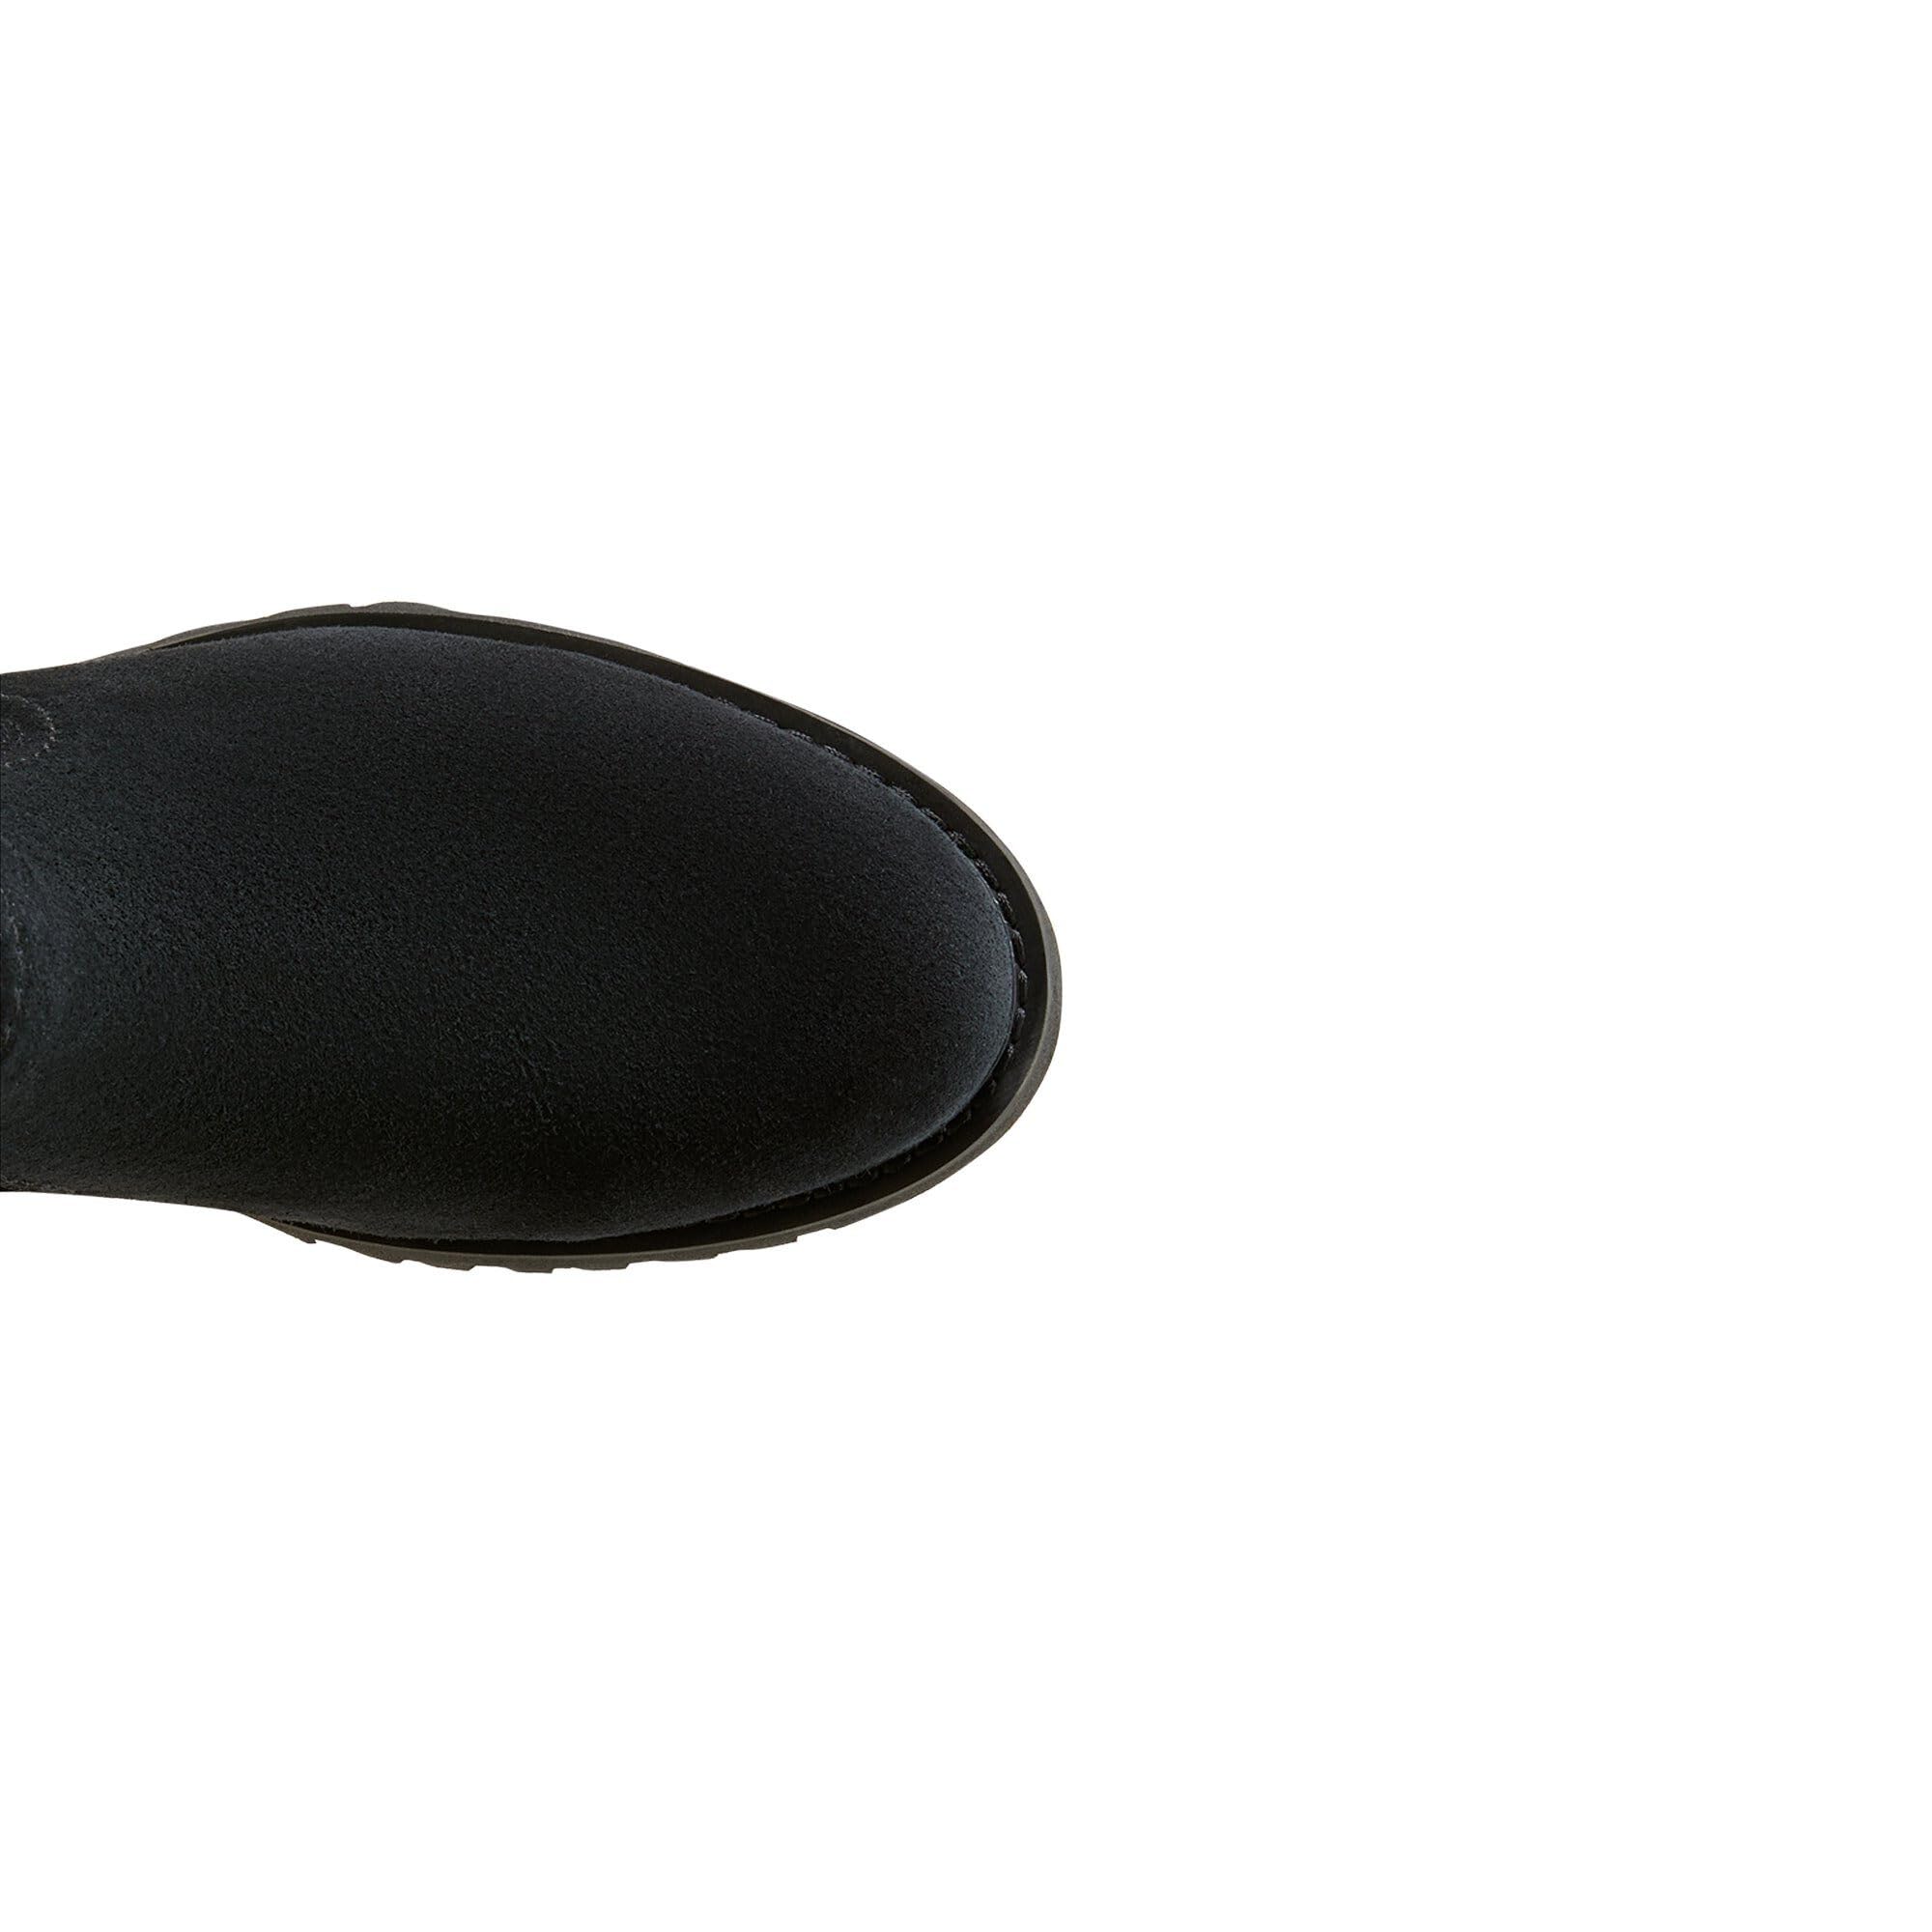 Ботинки Ariat Wexford Lug Waterproof Boot, черный цена и фото